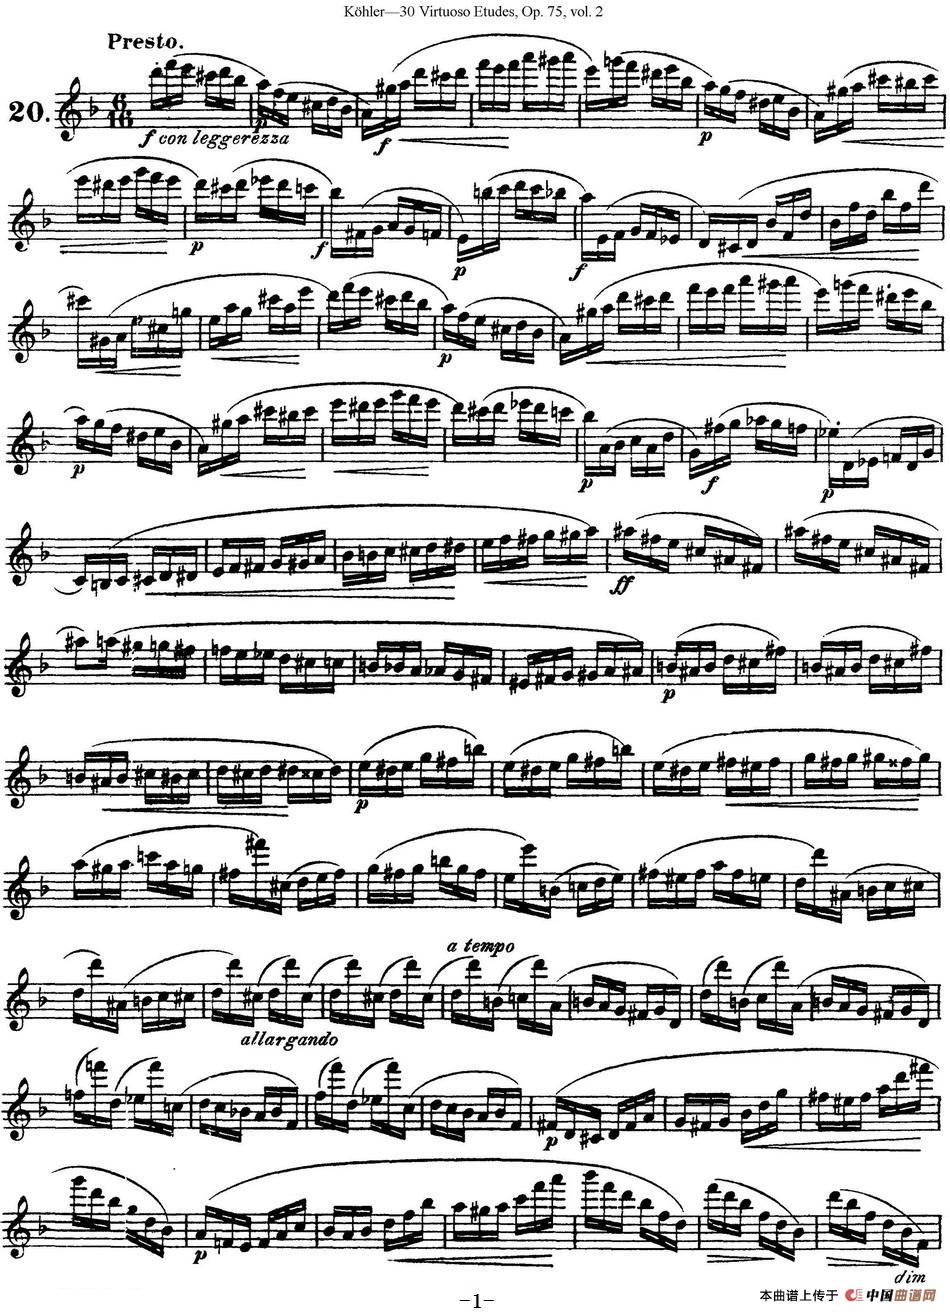 柯勒30首高级长笛练习曲作品75号（NO.20）